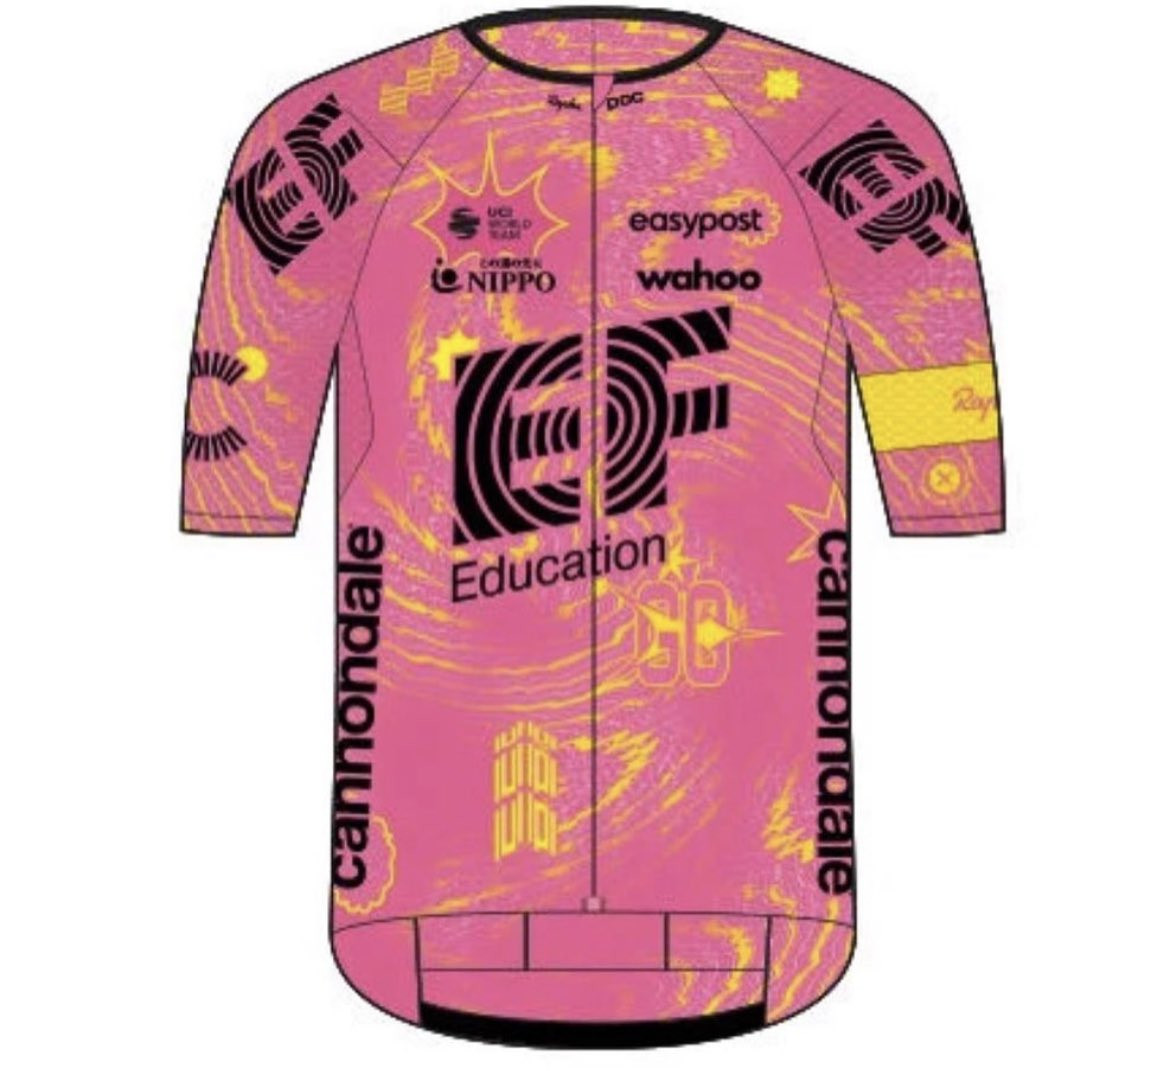 girodociclismo.com.br vazam acidentalmente imagens de novas camisas de equipes do world tour image 1